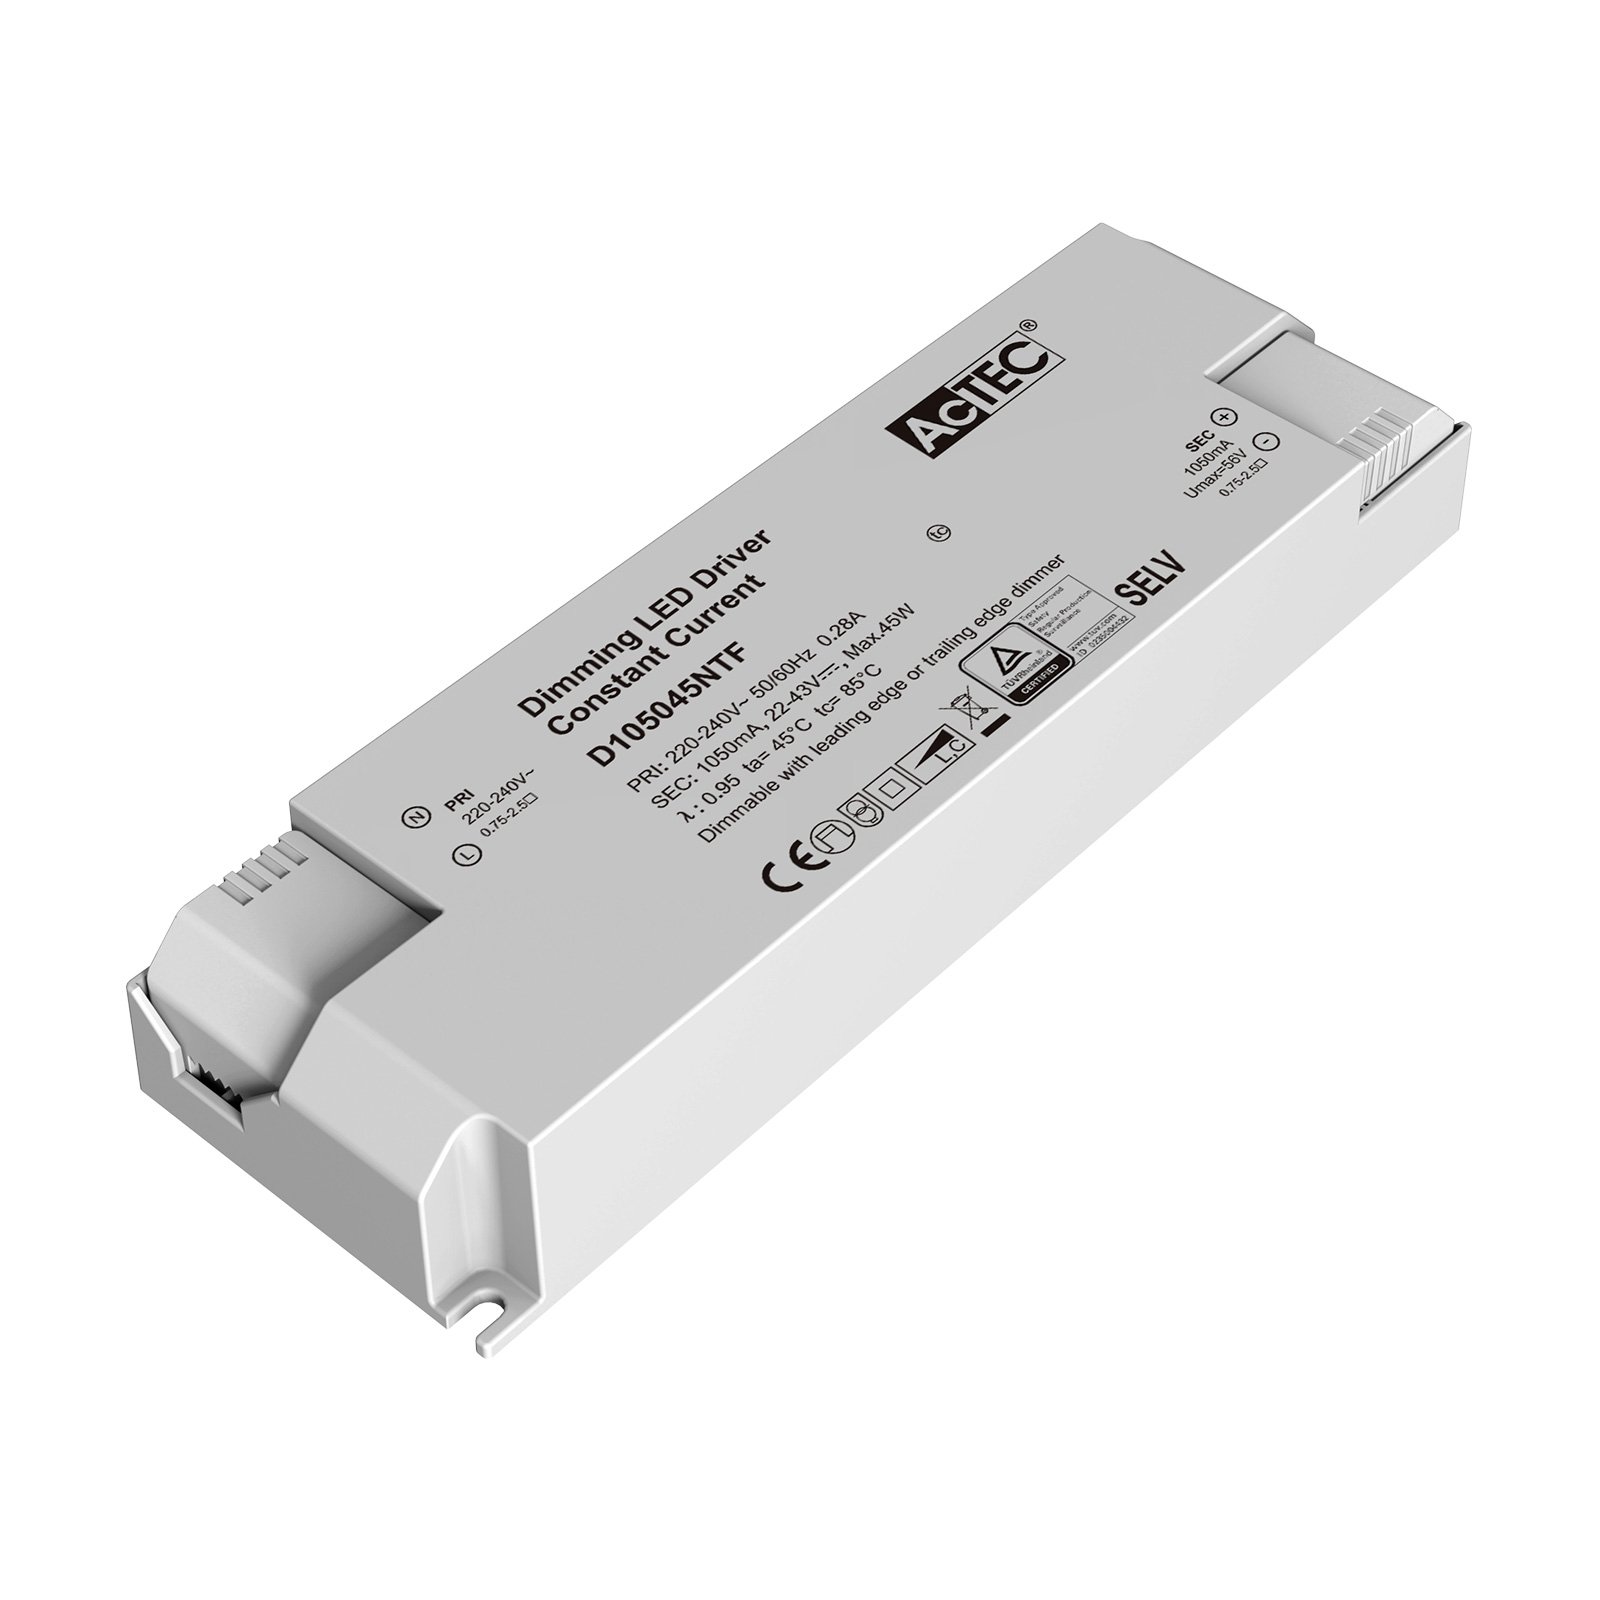 AcTEC Triac LED driver max. 45 W, 1,050 mA